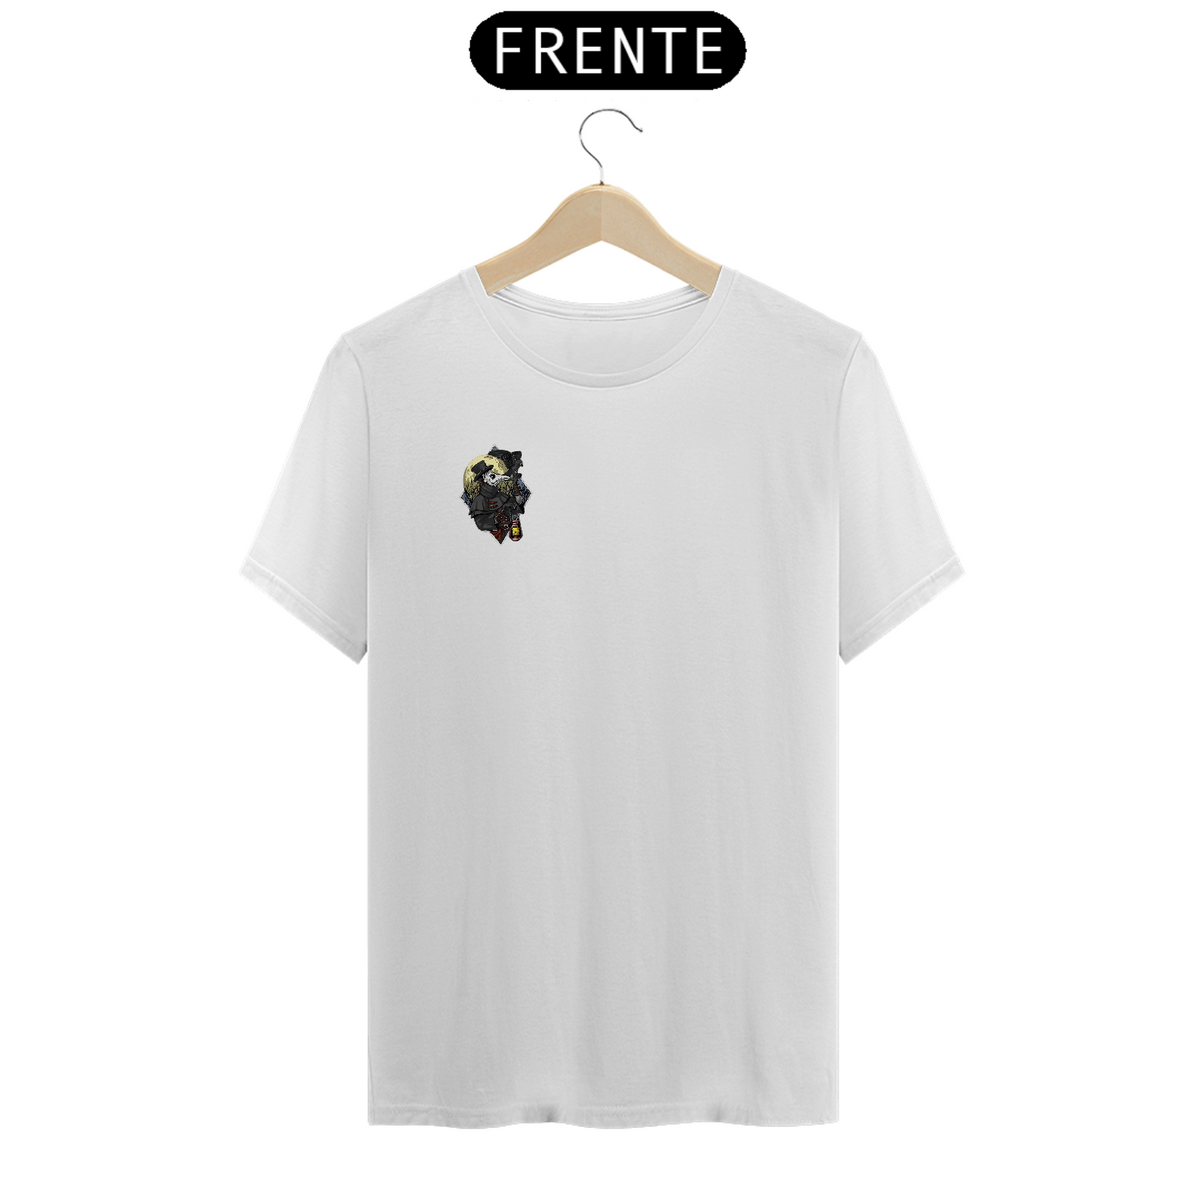 Nome do produto: Camiseta - Peste da noite - minimalista